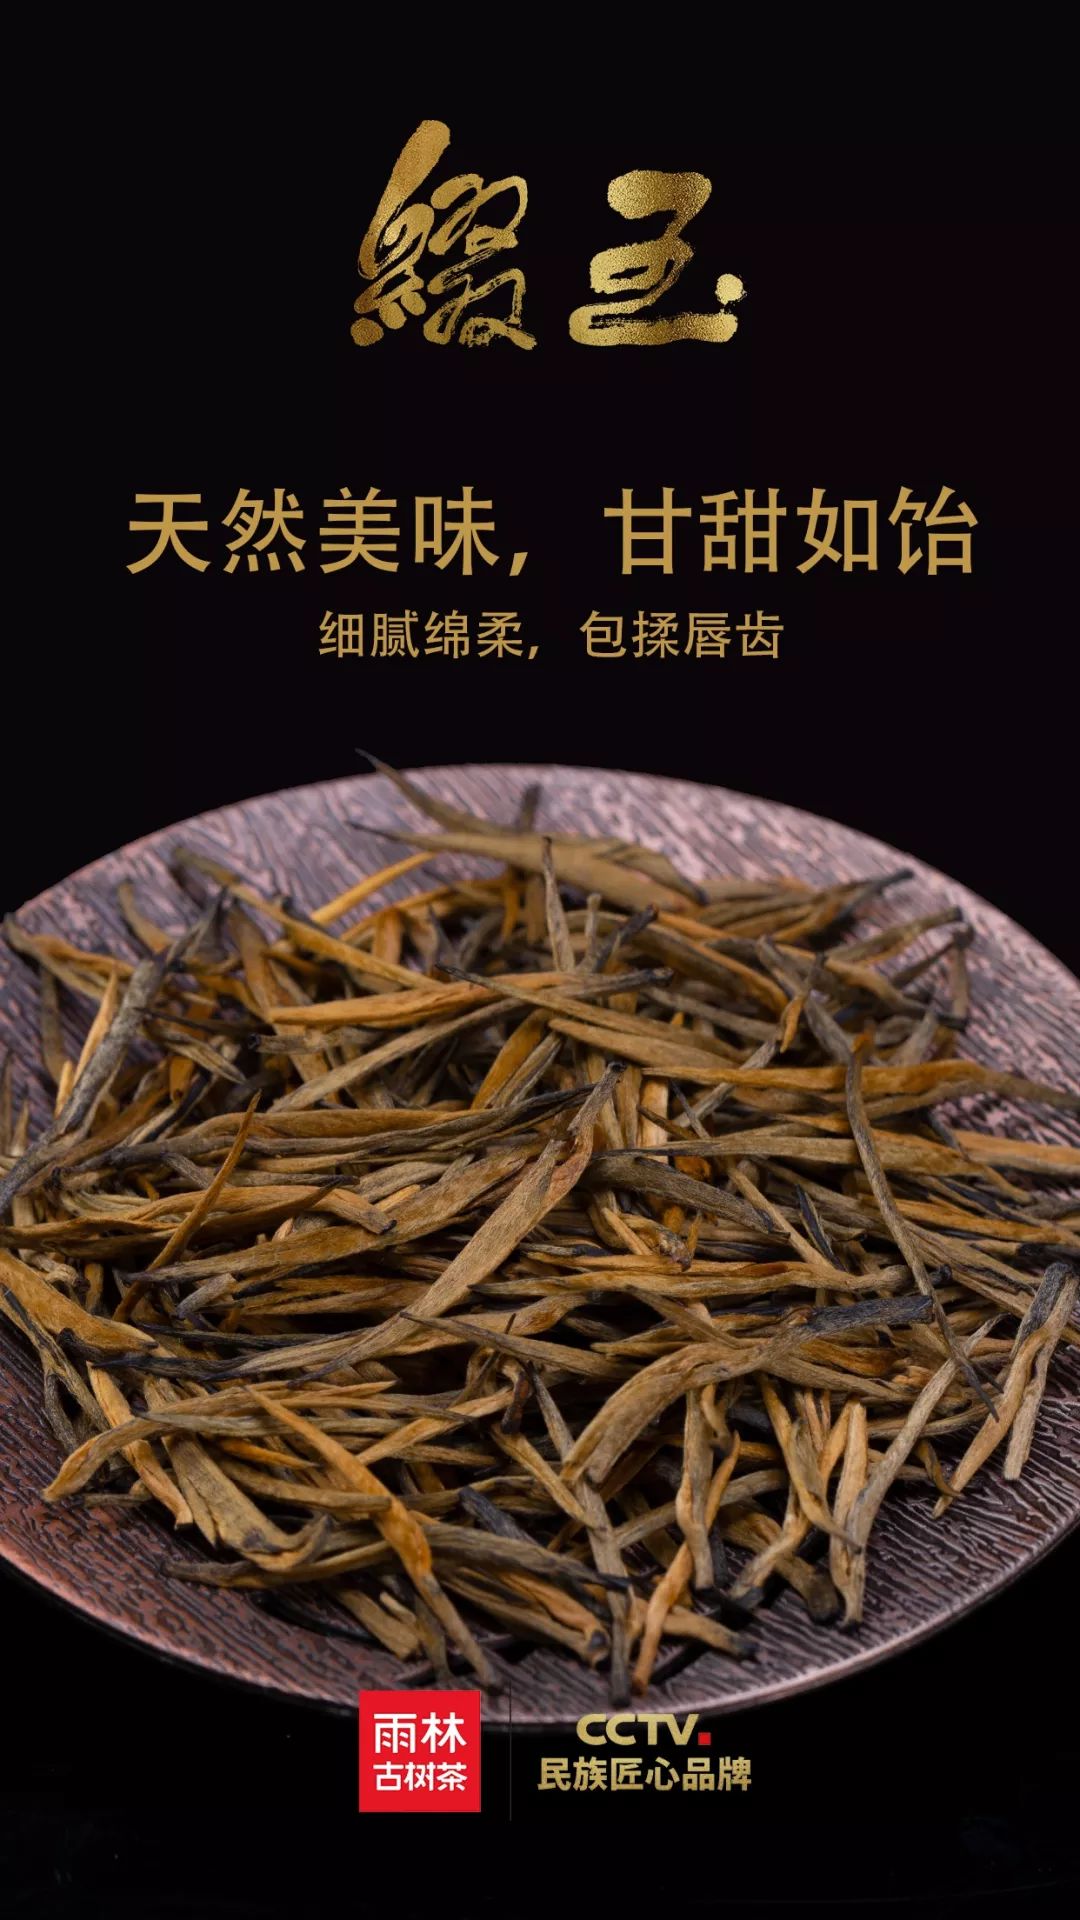 缀玉·古树红茶单芽